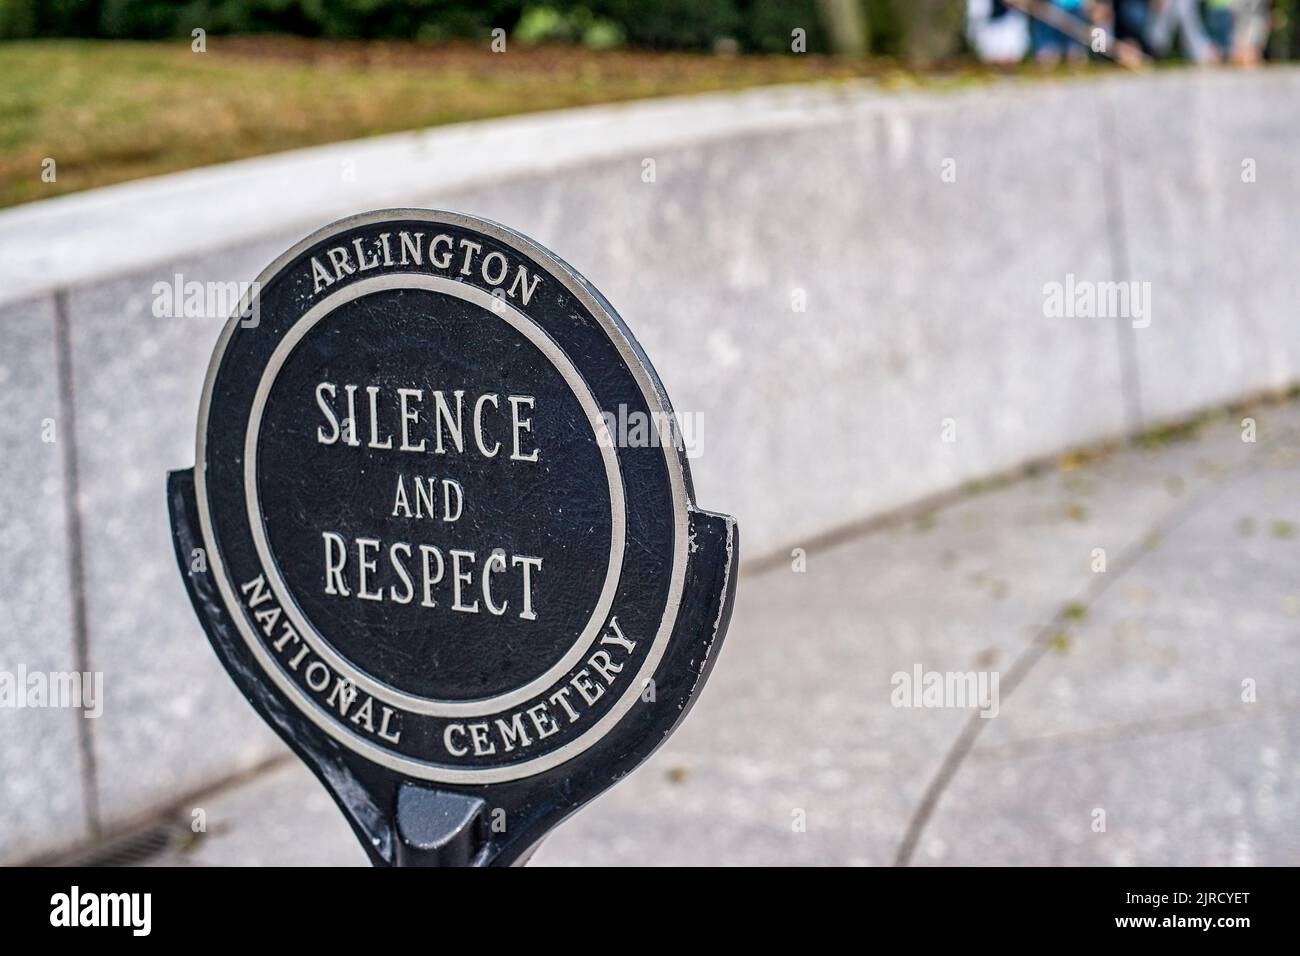 Panneau pour « Silence et respect » par le centre d'accueil du cimetière national d'Arlington, de l'autre côté de la rivière Potomac, depuis Washington Banque D'Images